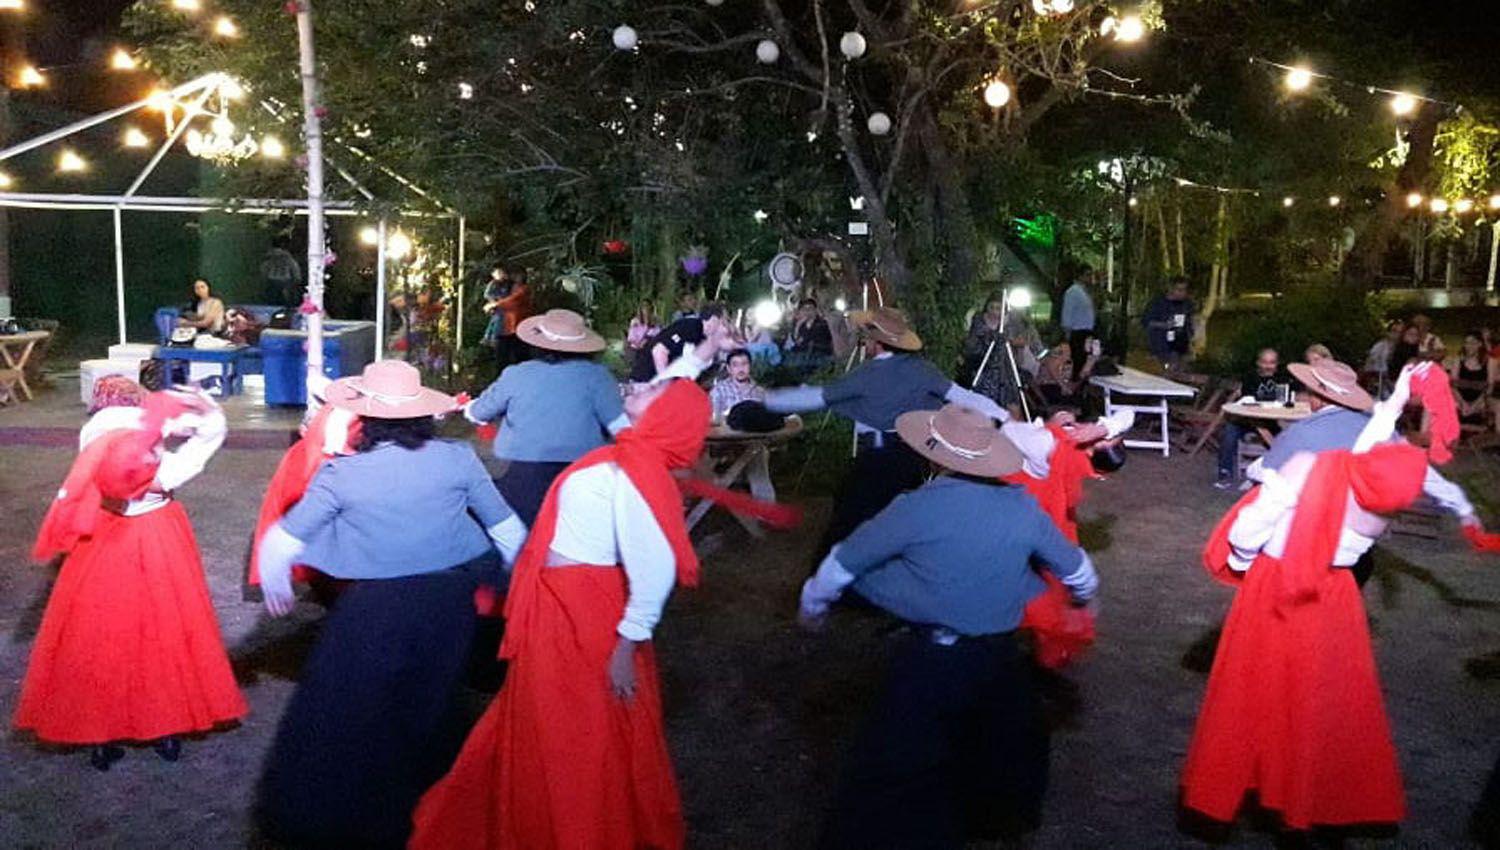 Promocionan el Festival Santiaguentildeo de la Tradicioacuten con una gira artiacutestica